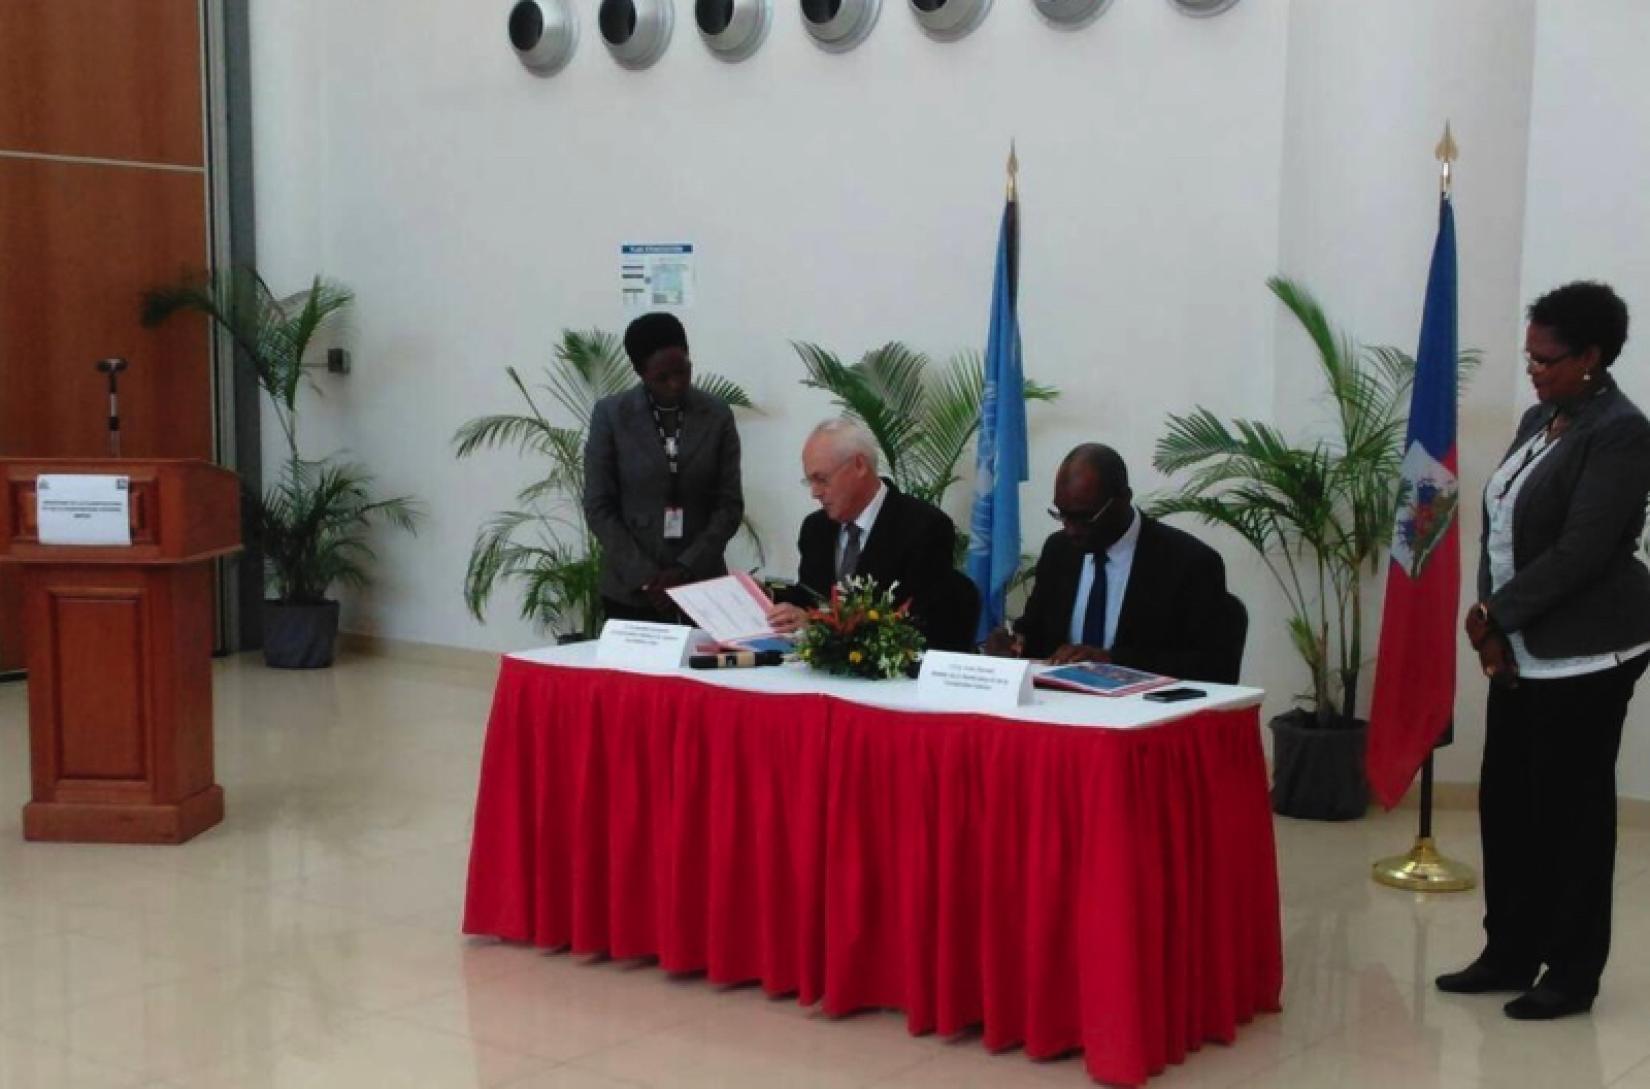 Le ministre de la Planification et de la Coopération externe, Me Aviol, et le Représentant spécial adjoint du Secrétaire général, Coordonnateur résident et Coordonnateur humanitaire de l´ONU en Haïti, M. El-Mostafa Benlamlih, Fleurant, signant le document à la Banque Centrale d´Haïti.